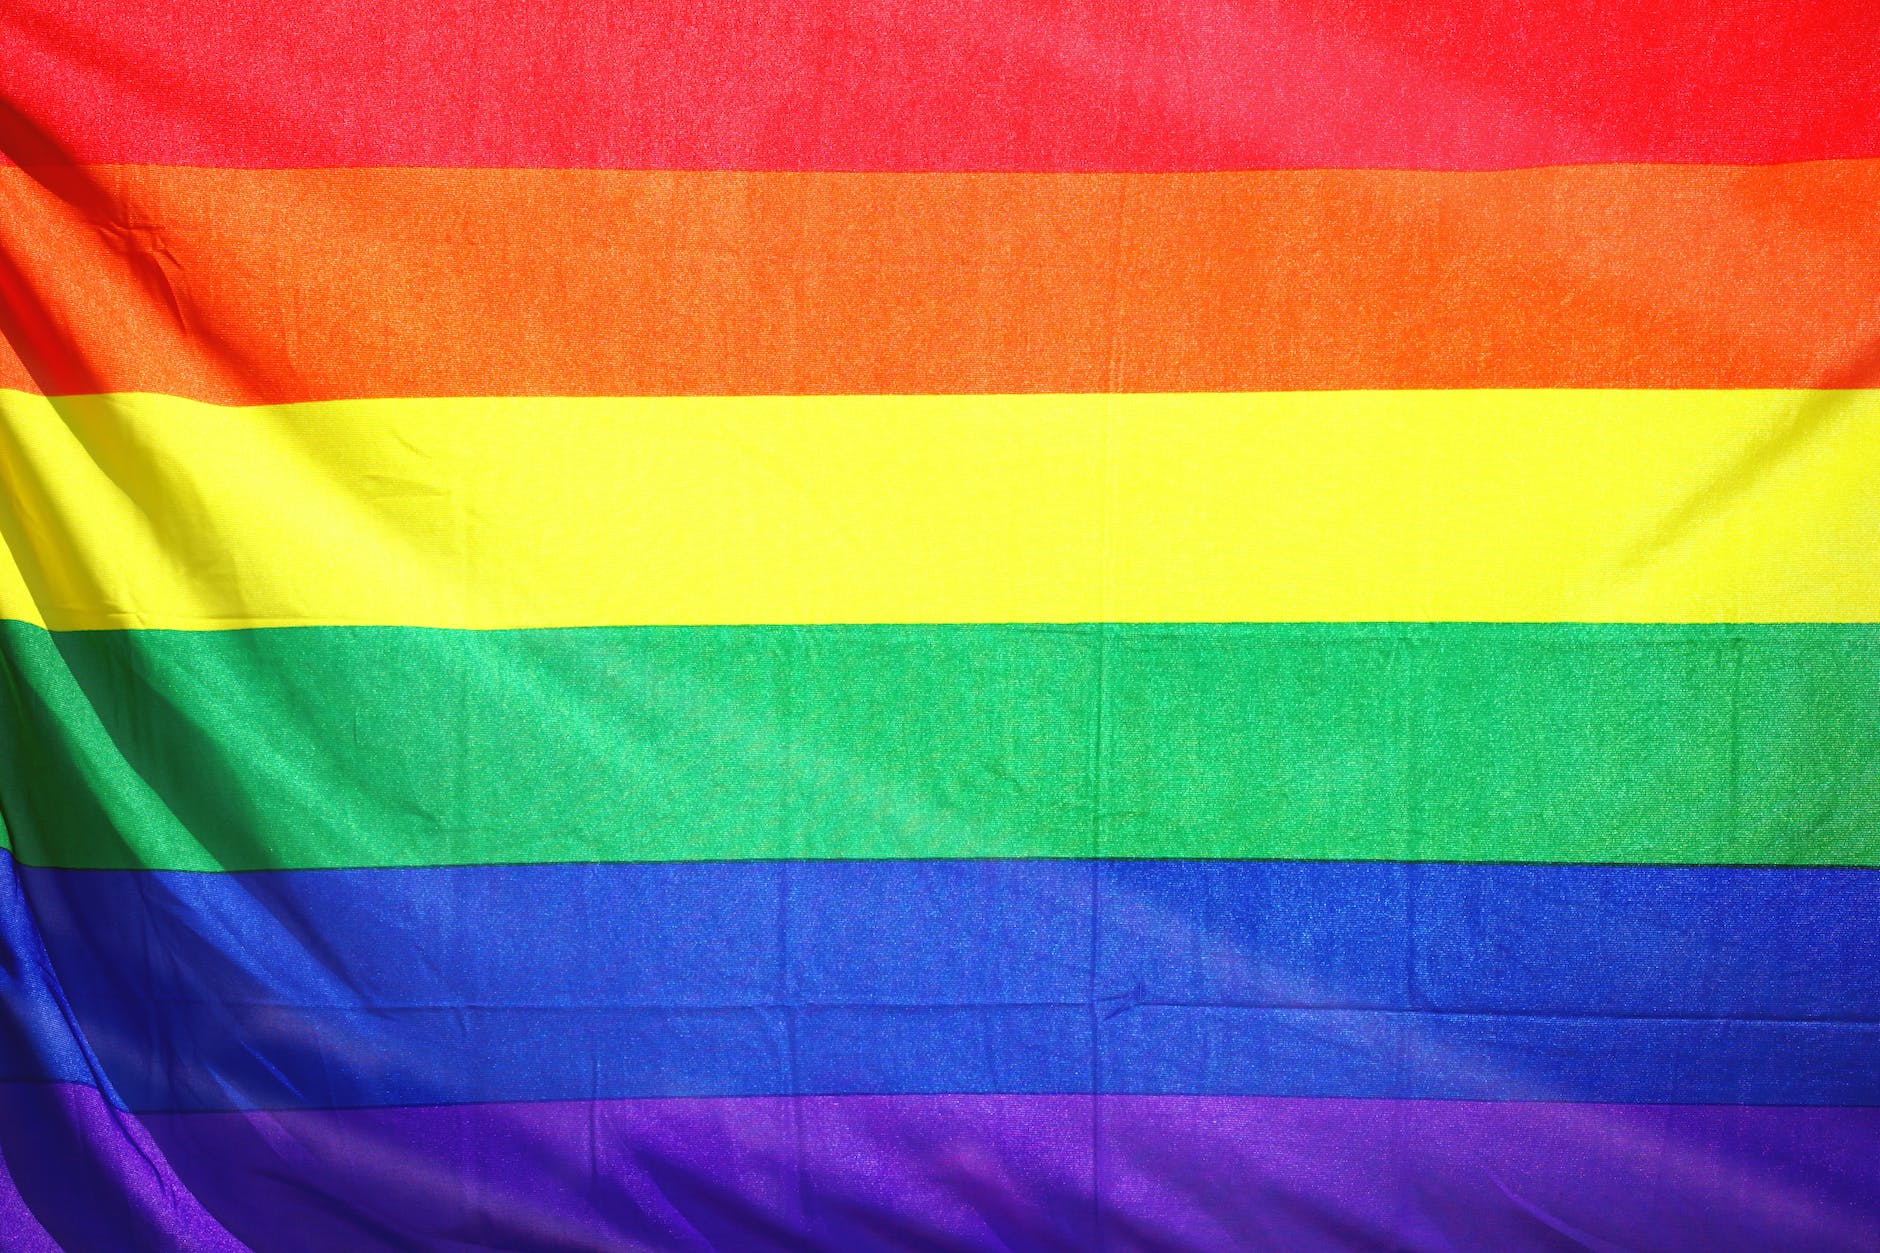 When is gay pride in Calderdale? Calderdale pride 2023 is in August